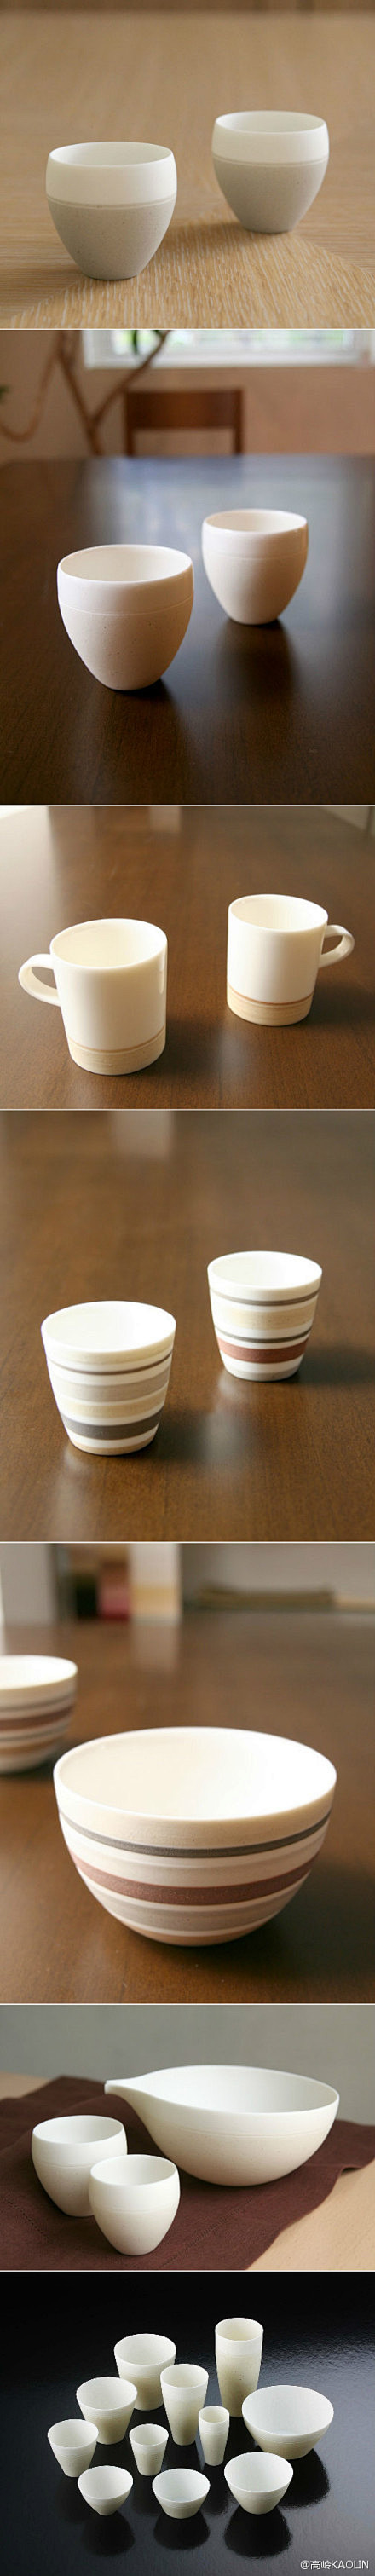 松野章弘是基于粘土与瓷土涂层装饰方式制作...